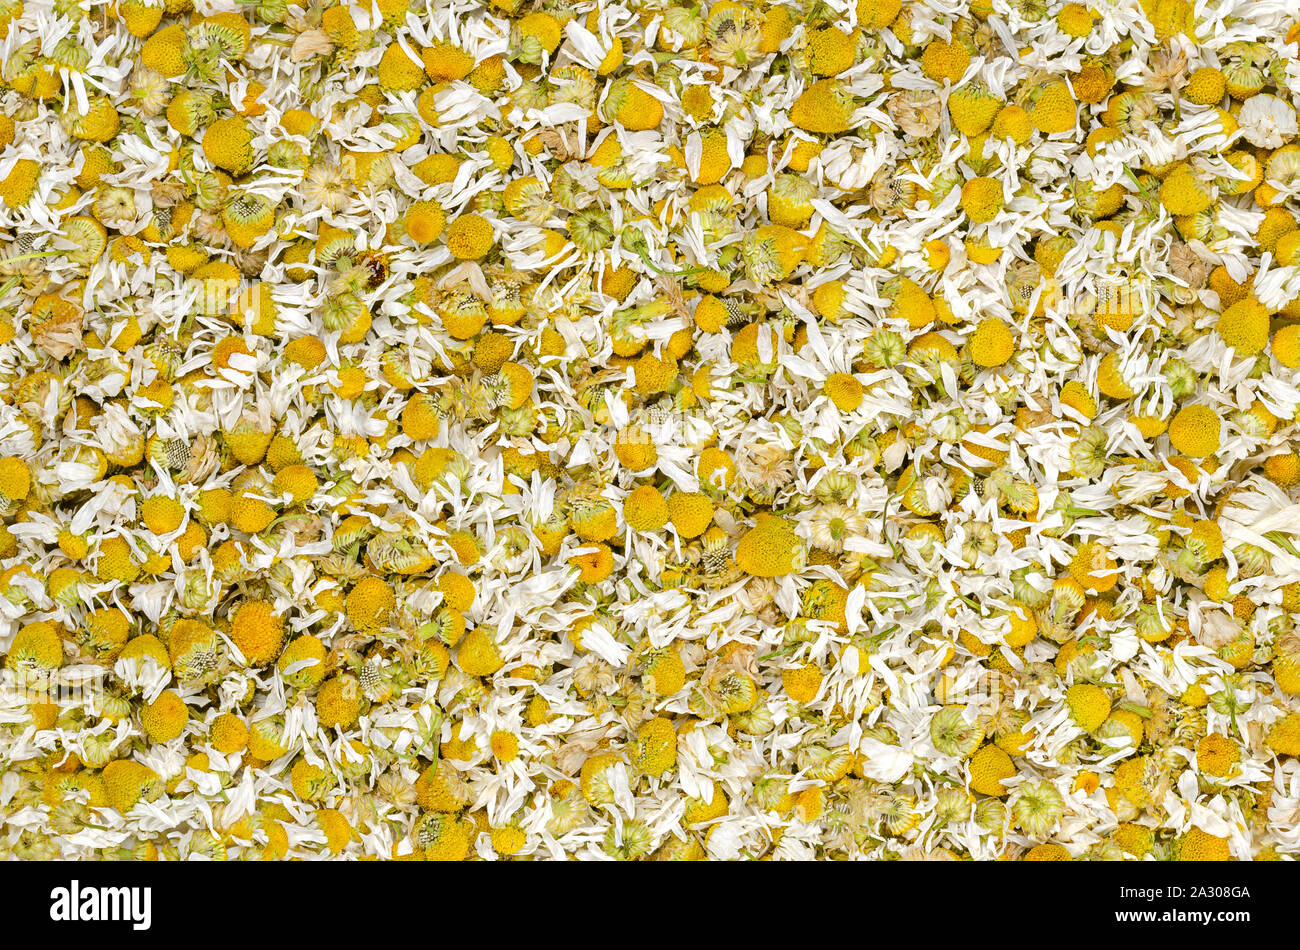 Getrocknete Kamille Blüten, Hintergrund. Kamille Tee, die Blumen der Matricaria Chamomilla, für Kräutertees und in der traditionellen Medizin verwendet. Stockfoto